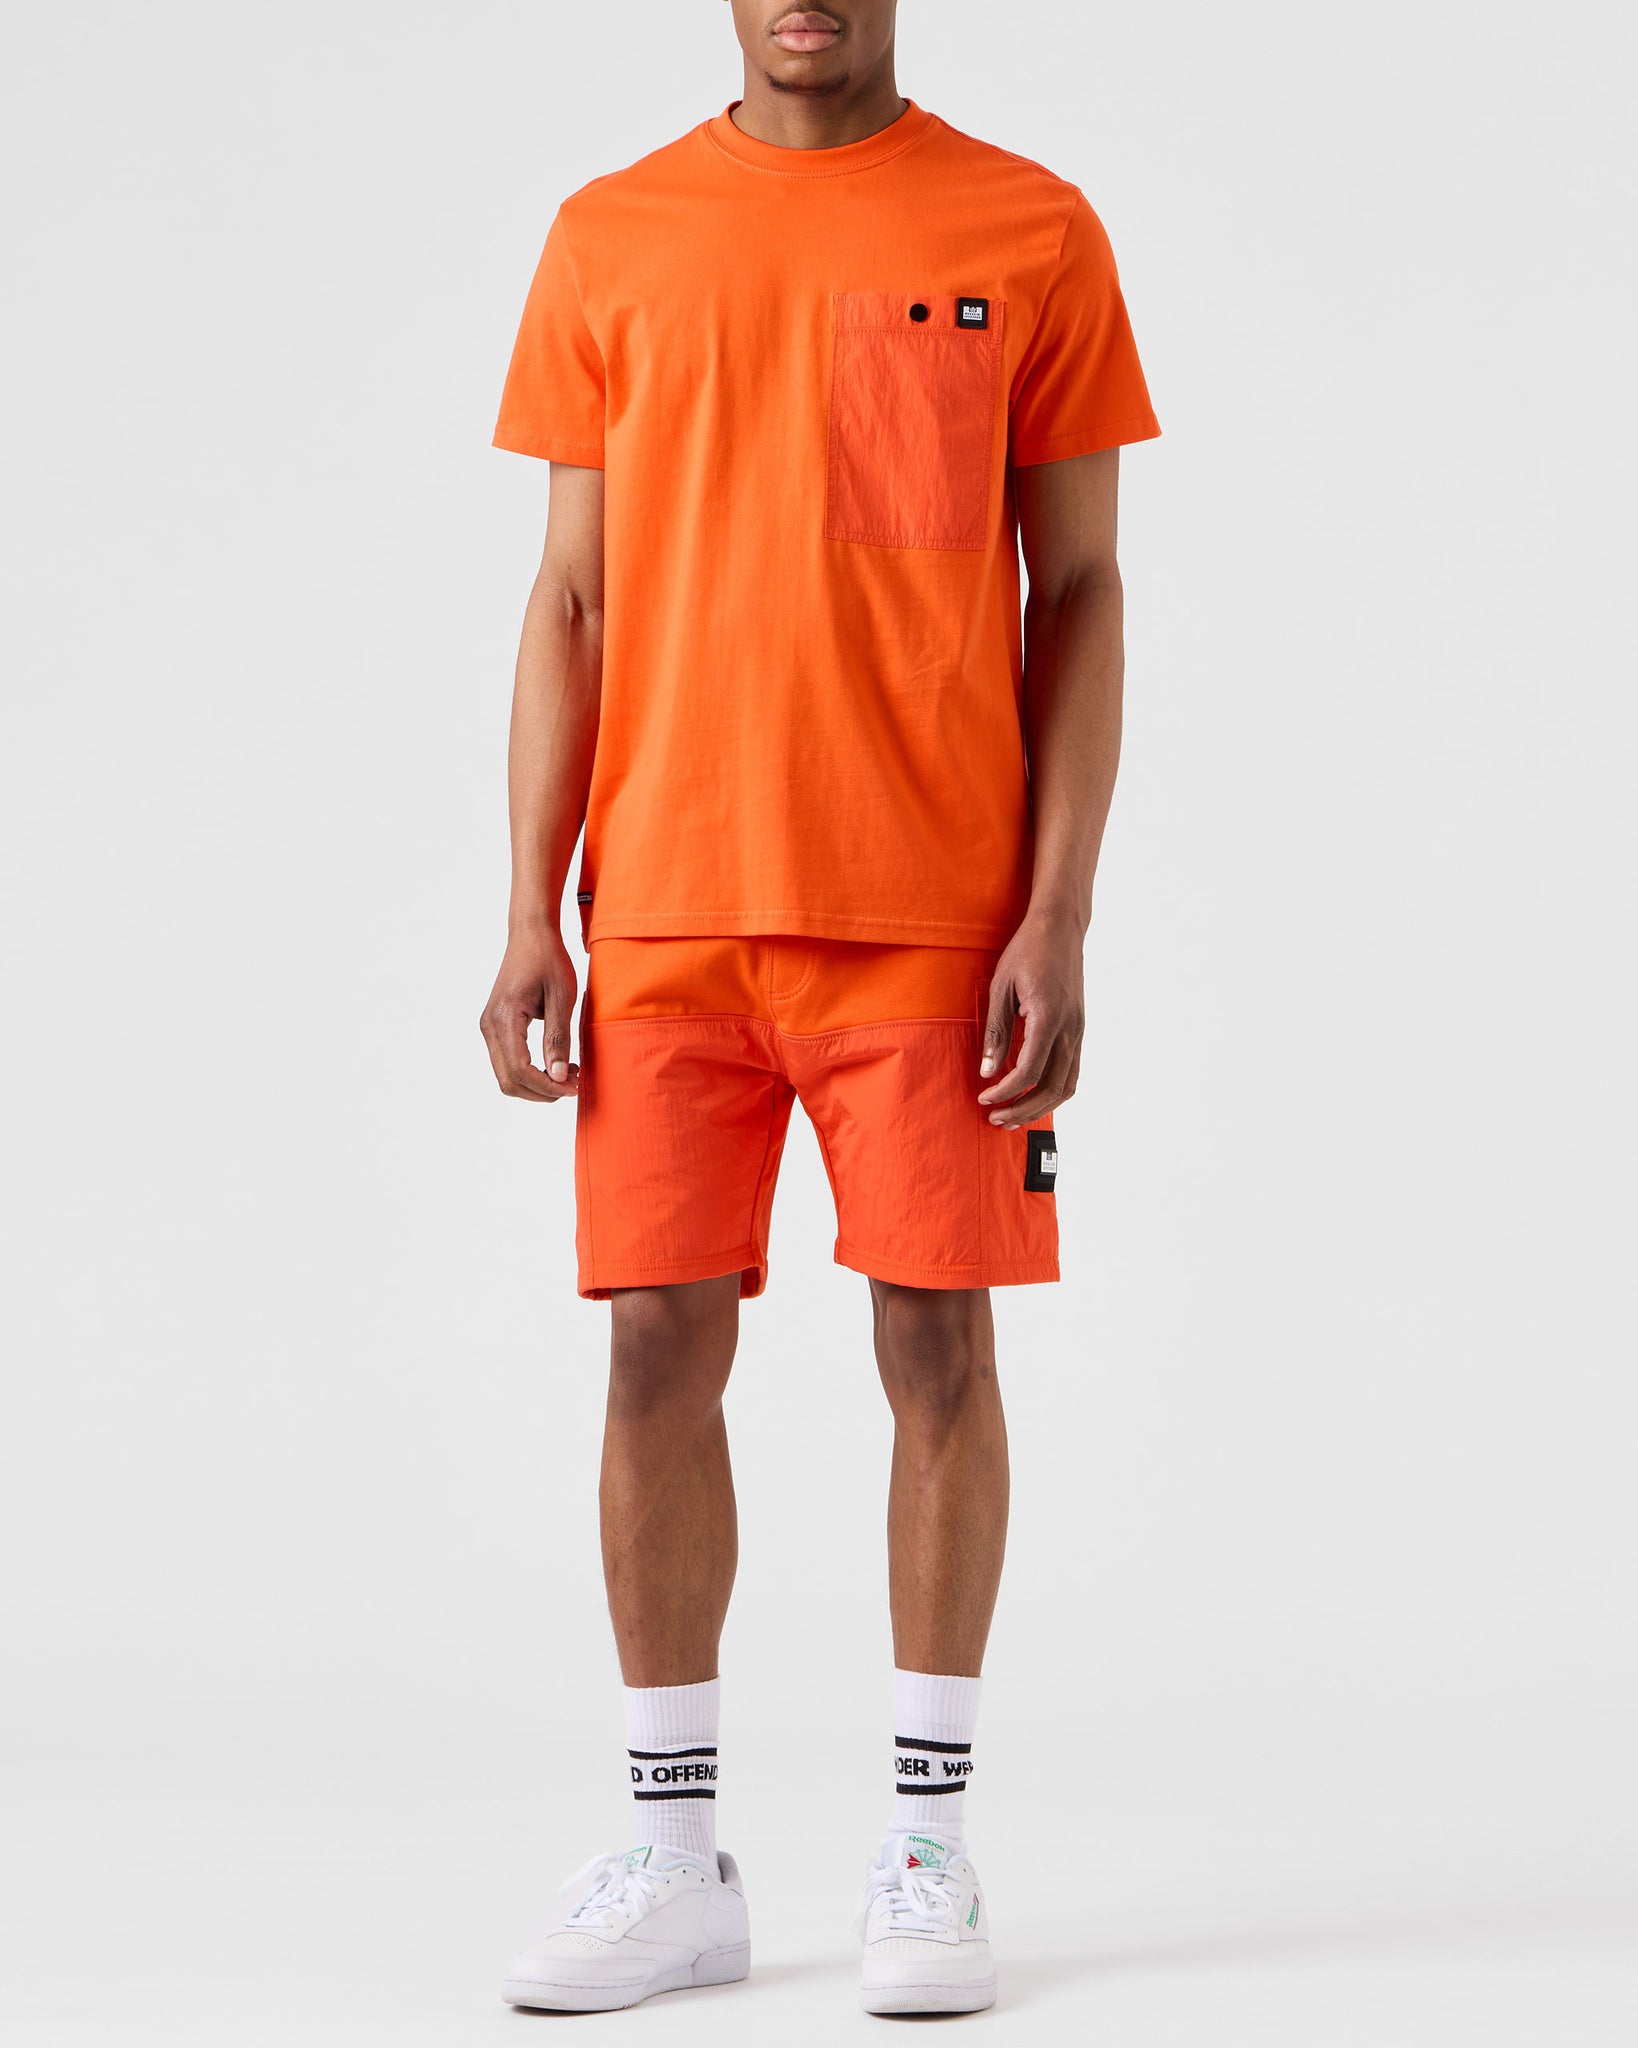 Tabiti Pocket T-Shirt Orange Fizz